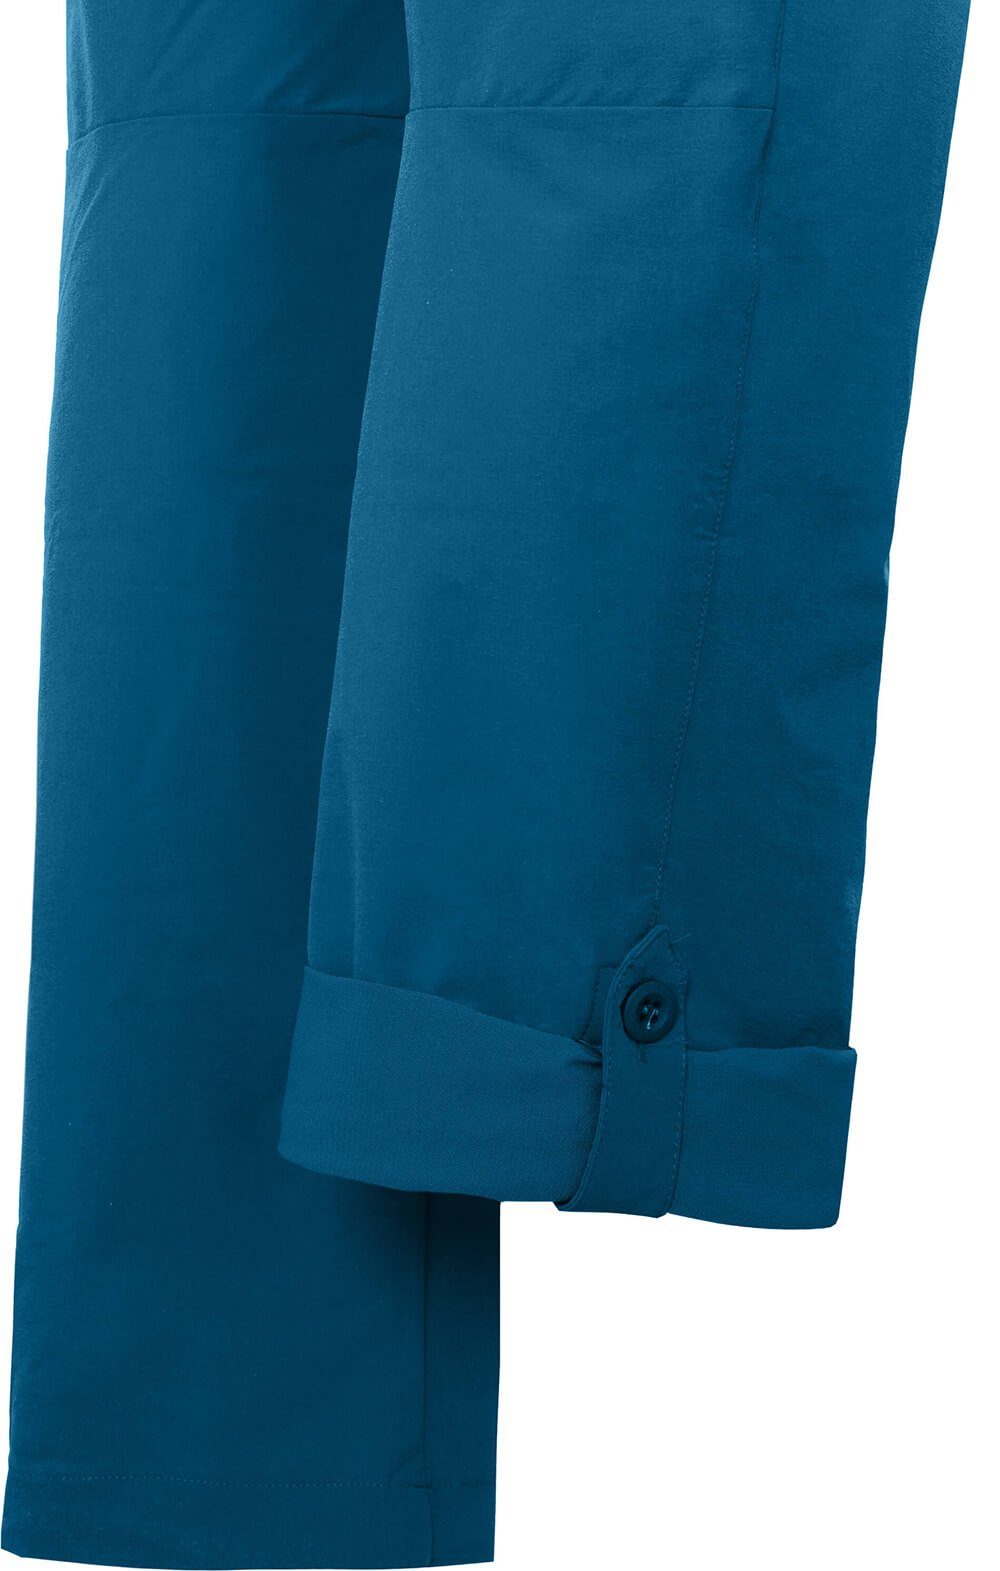 Bergson Saphir VIDAA Outdoorhose leicht, strapazierfähig, Kurzgrößen, Wanderhose, Damen blau COMFORT